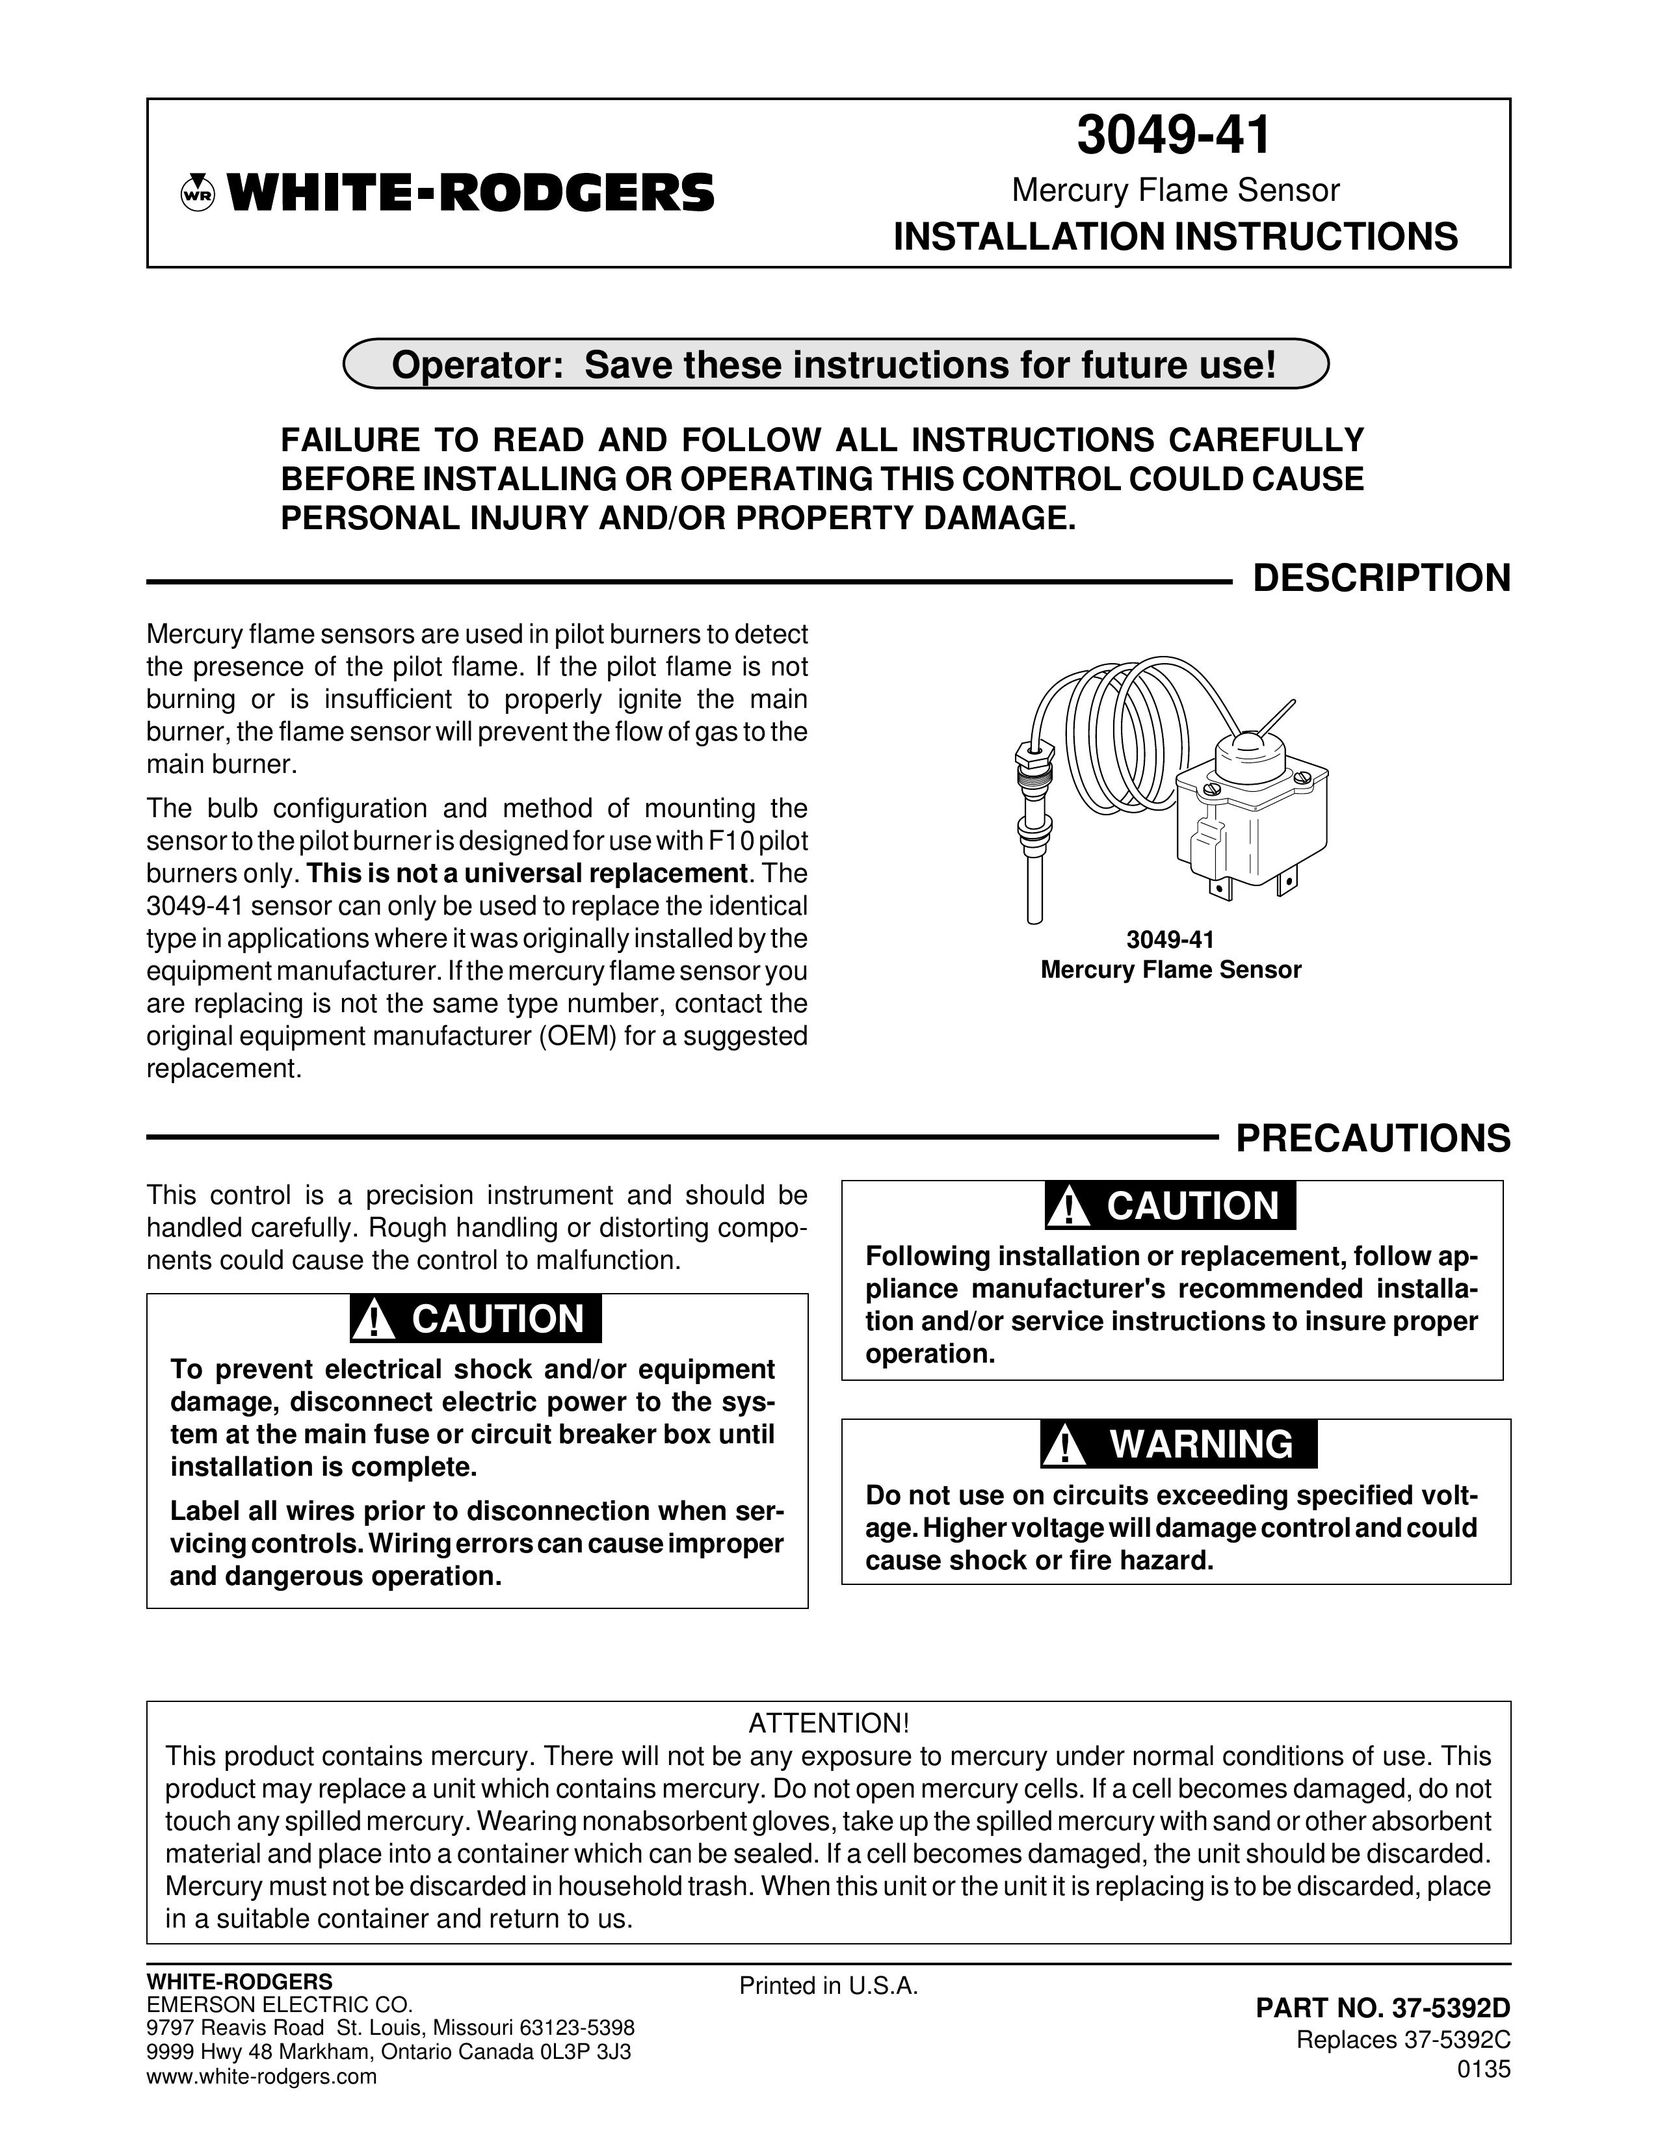 Emerson Process Management 37-5392D Stud Sensor User Manual